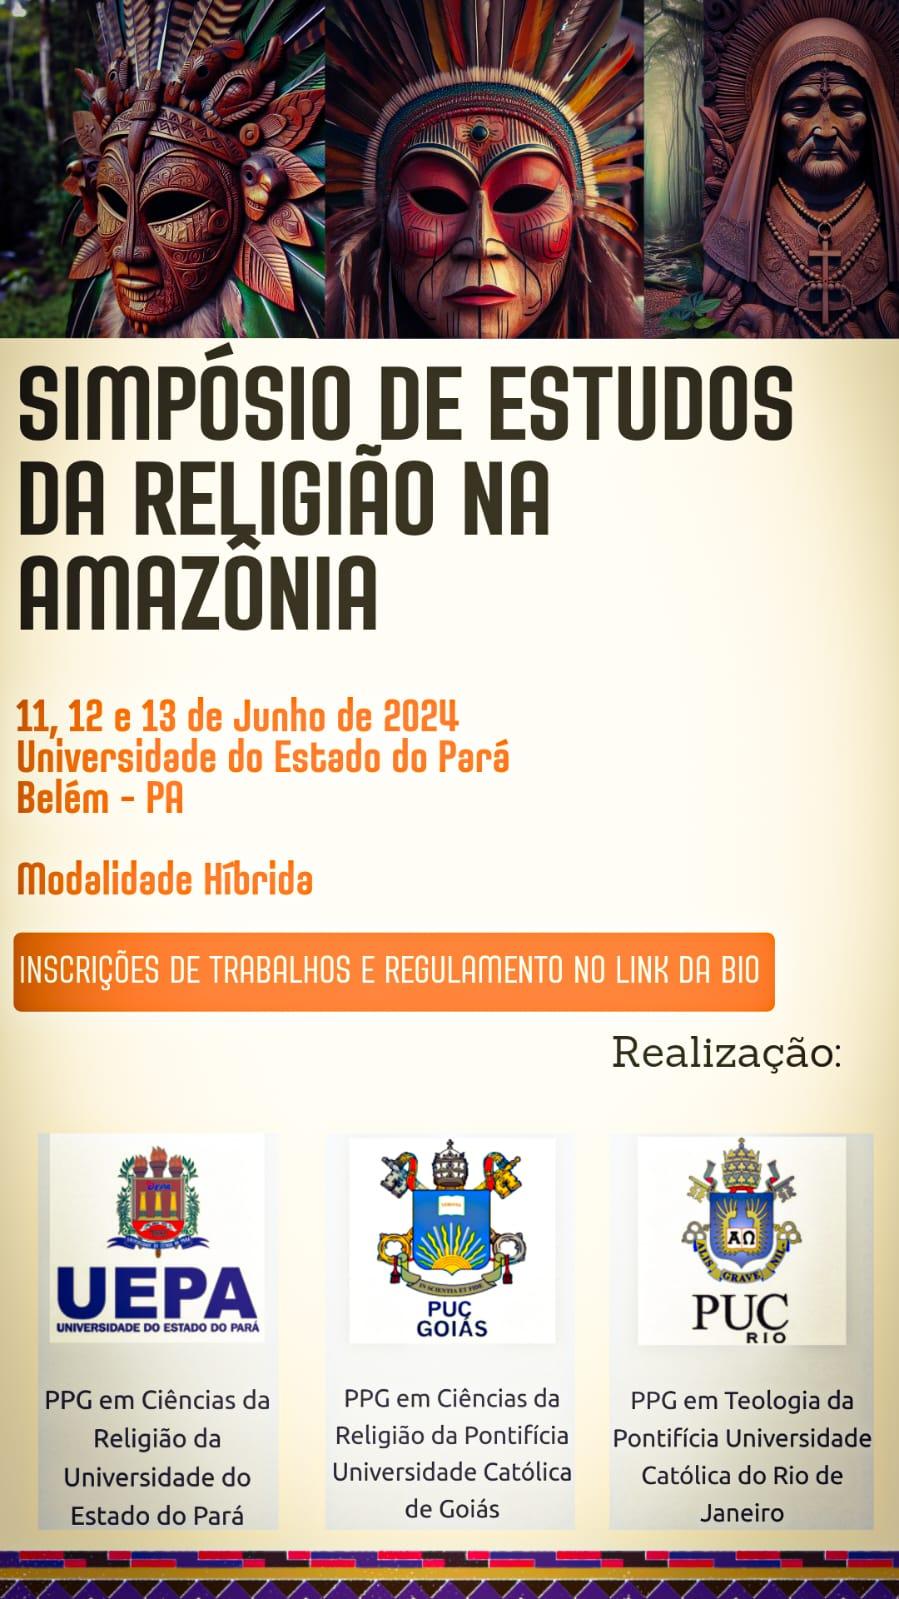 Simpósio de Estudos de Religião na Amazônia